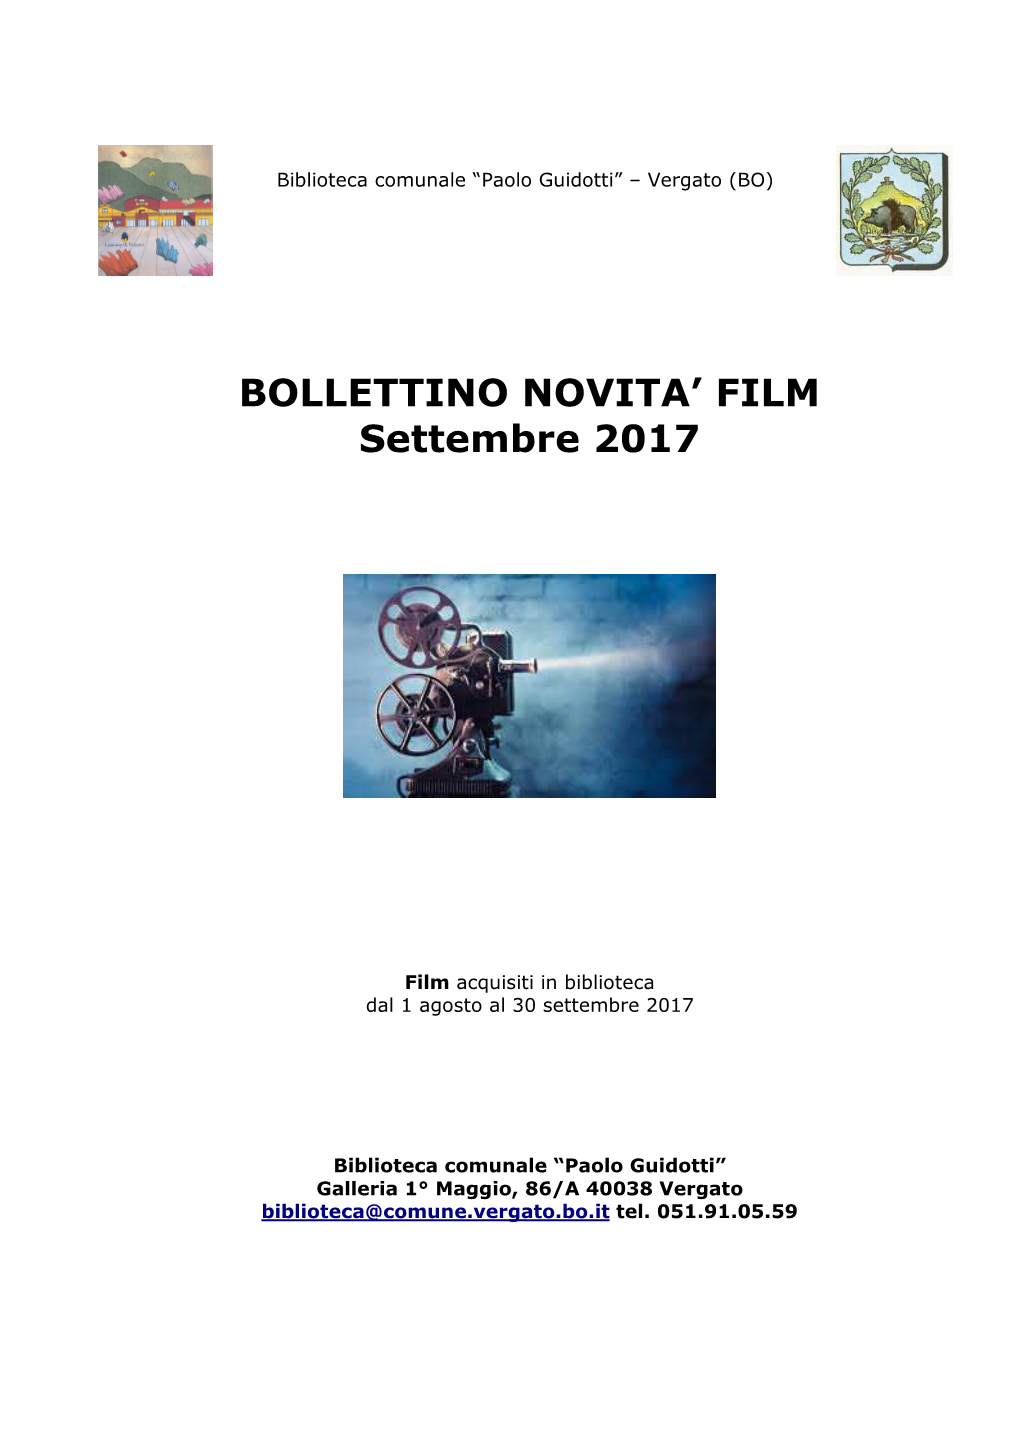 BOLLETTINO NOVITA' FILM Settembre 2017